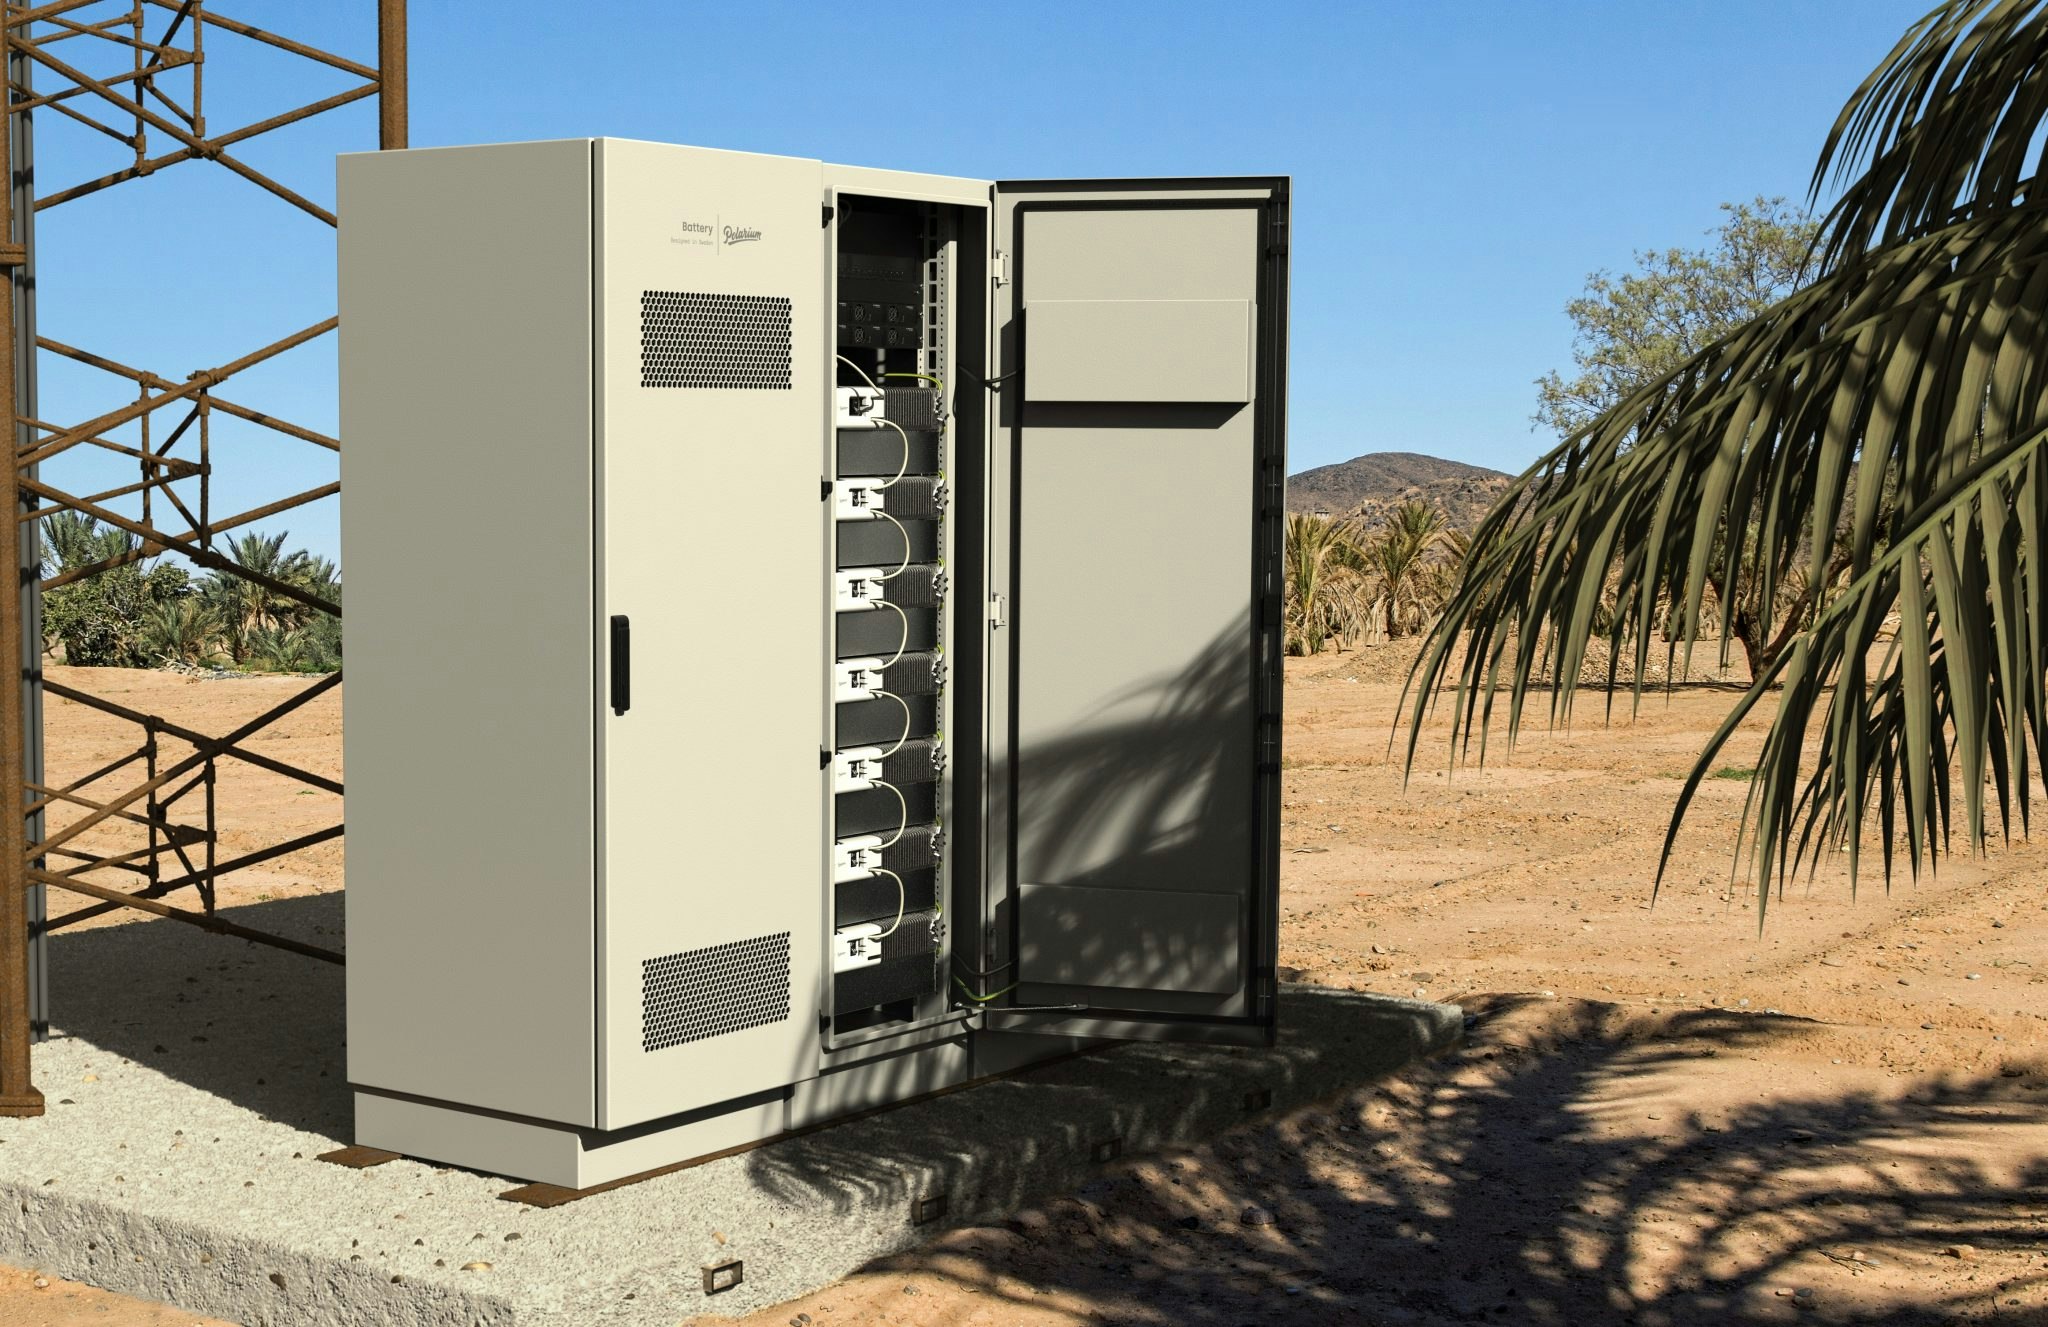 Polarium energy storage system in Australia